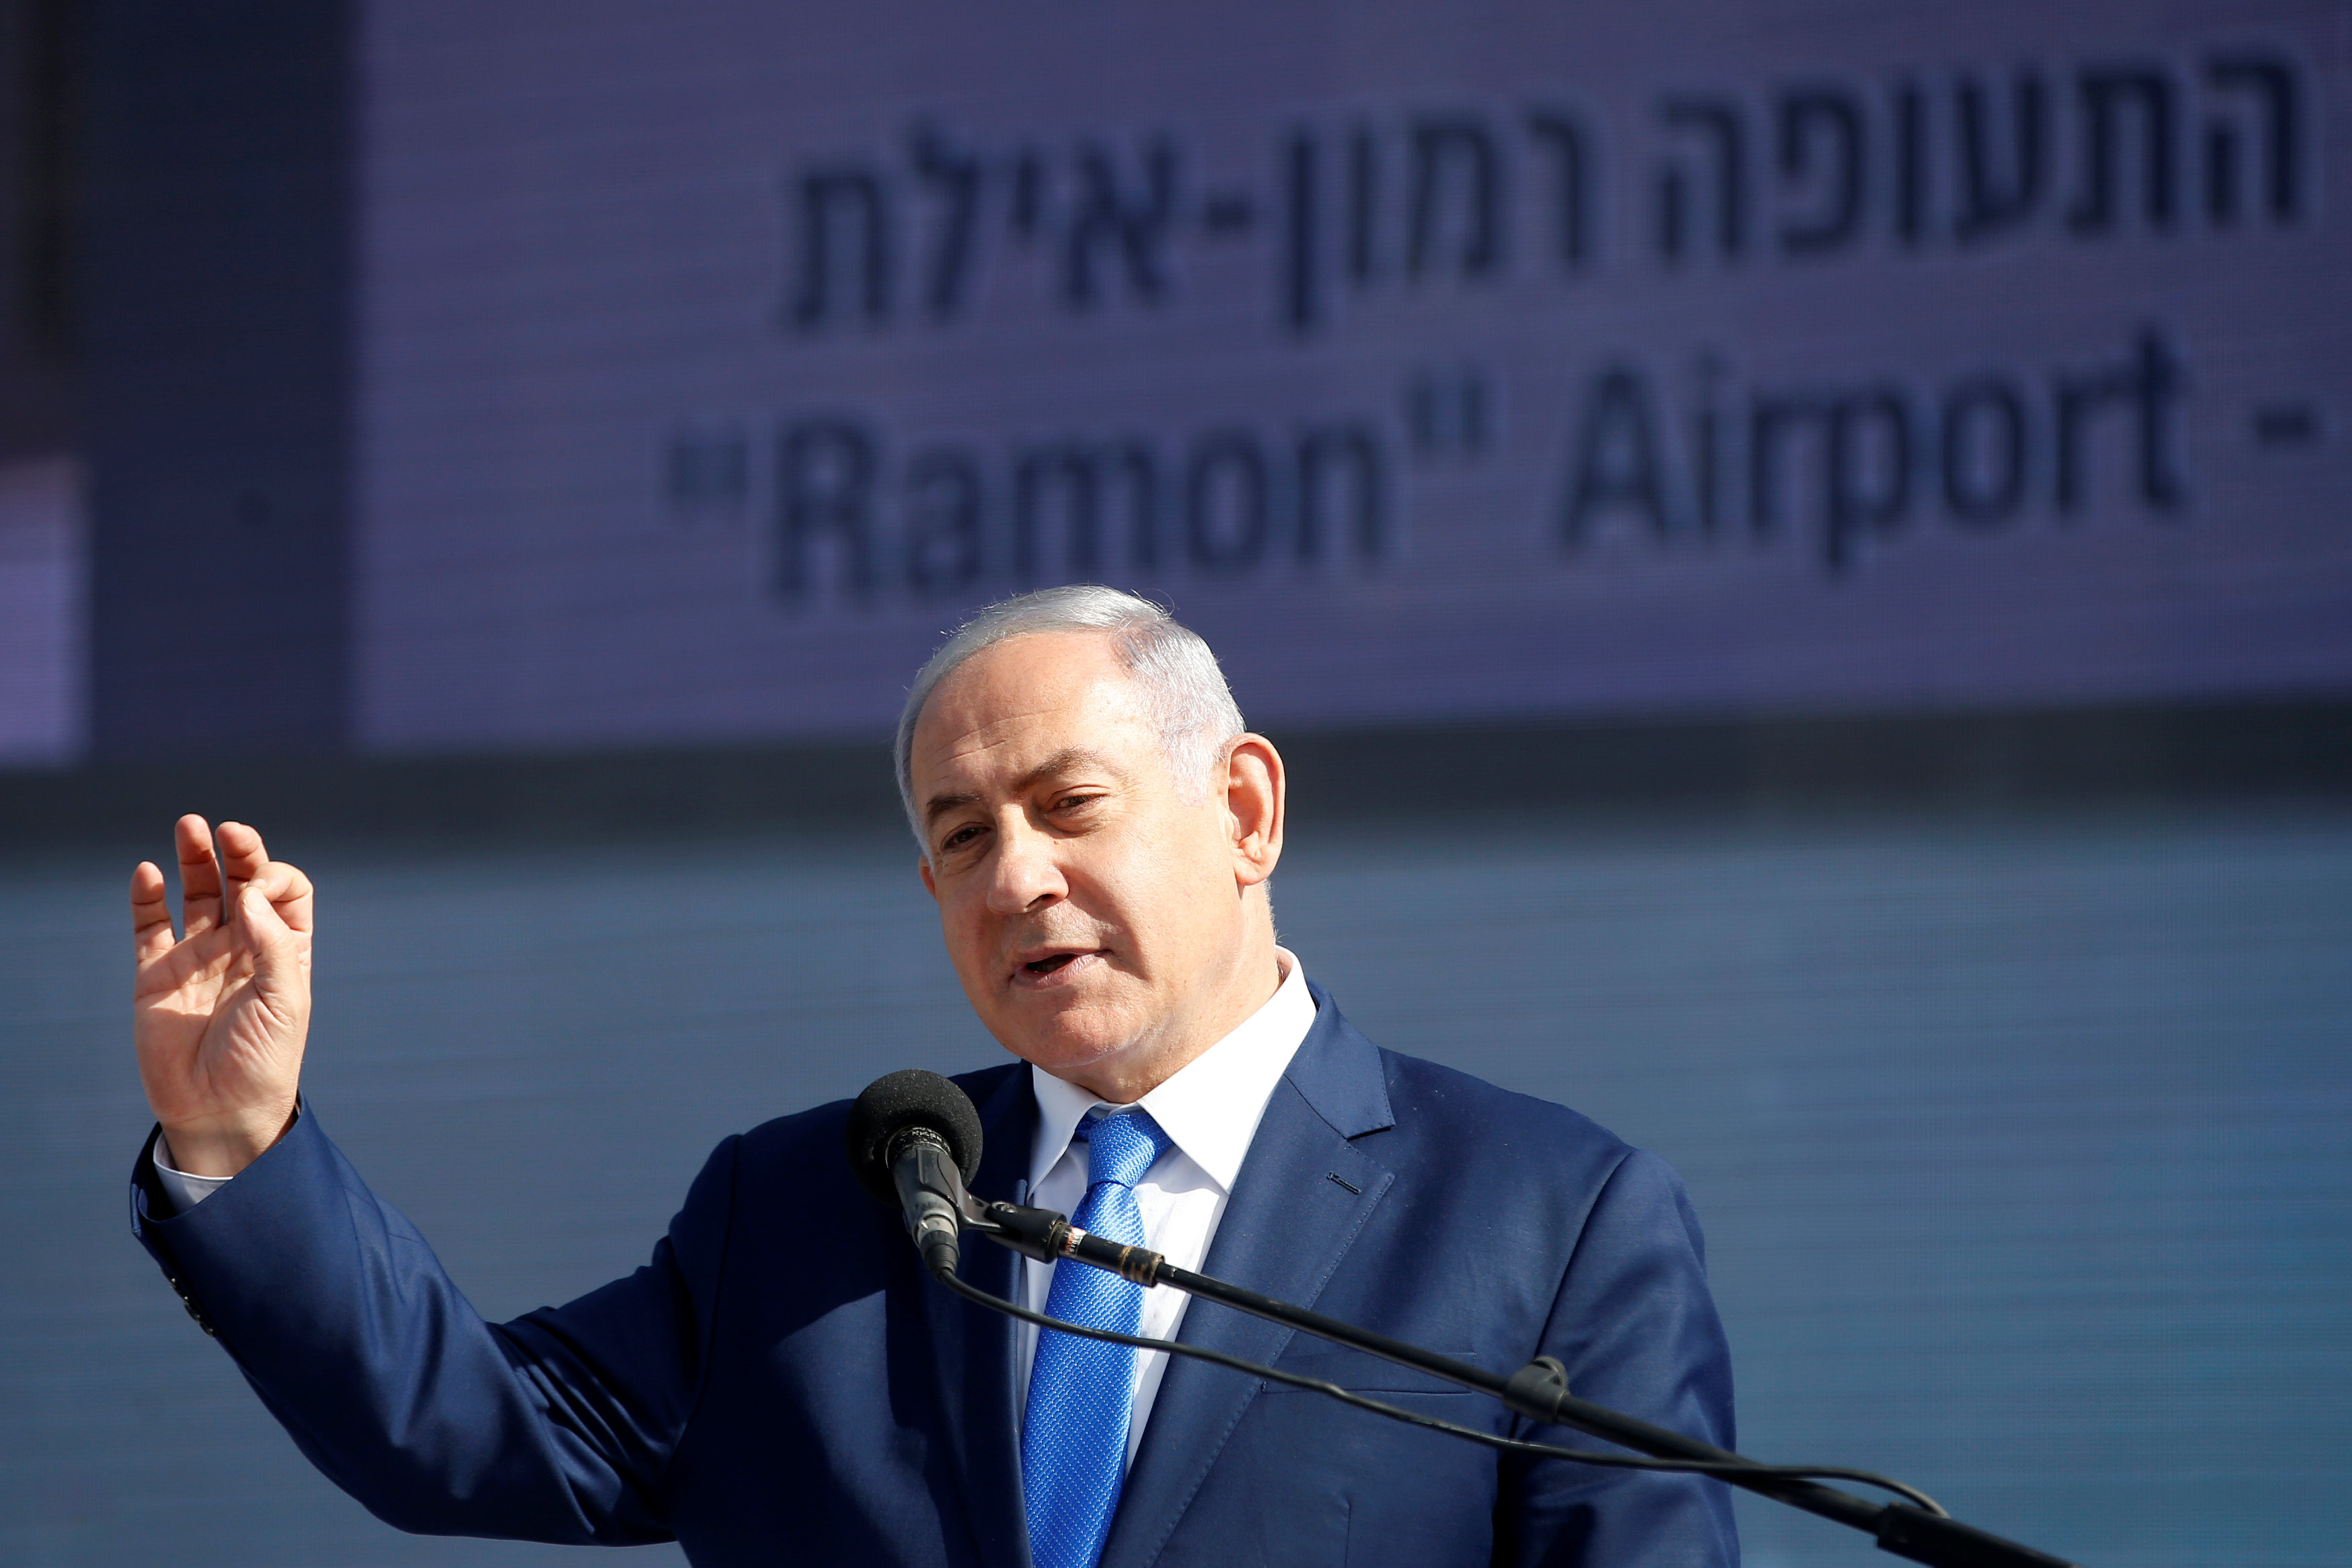 رئيس الوزراء الإسرائيلي بنيامين نتنياهو يتحدث خلال افتتاح مطار رامون، 21 يناير 2019. رويترز  